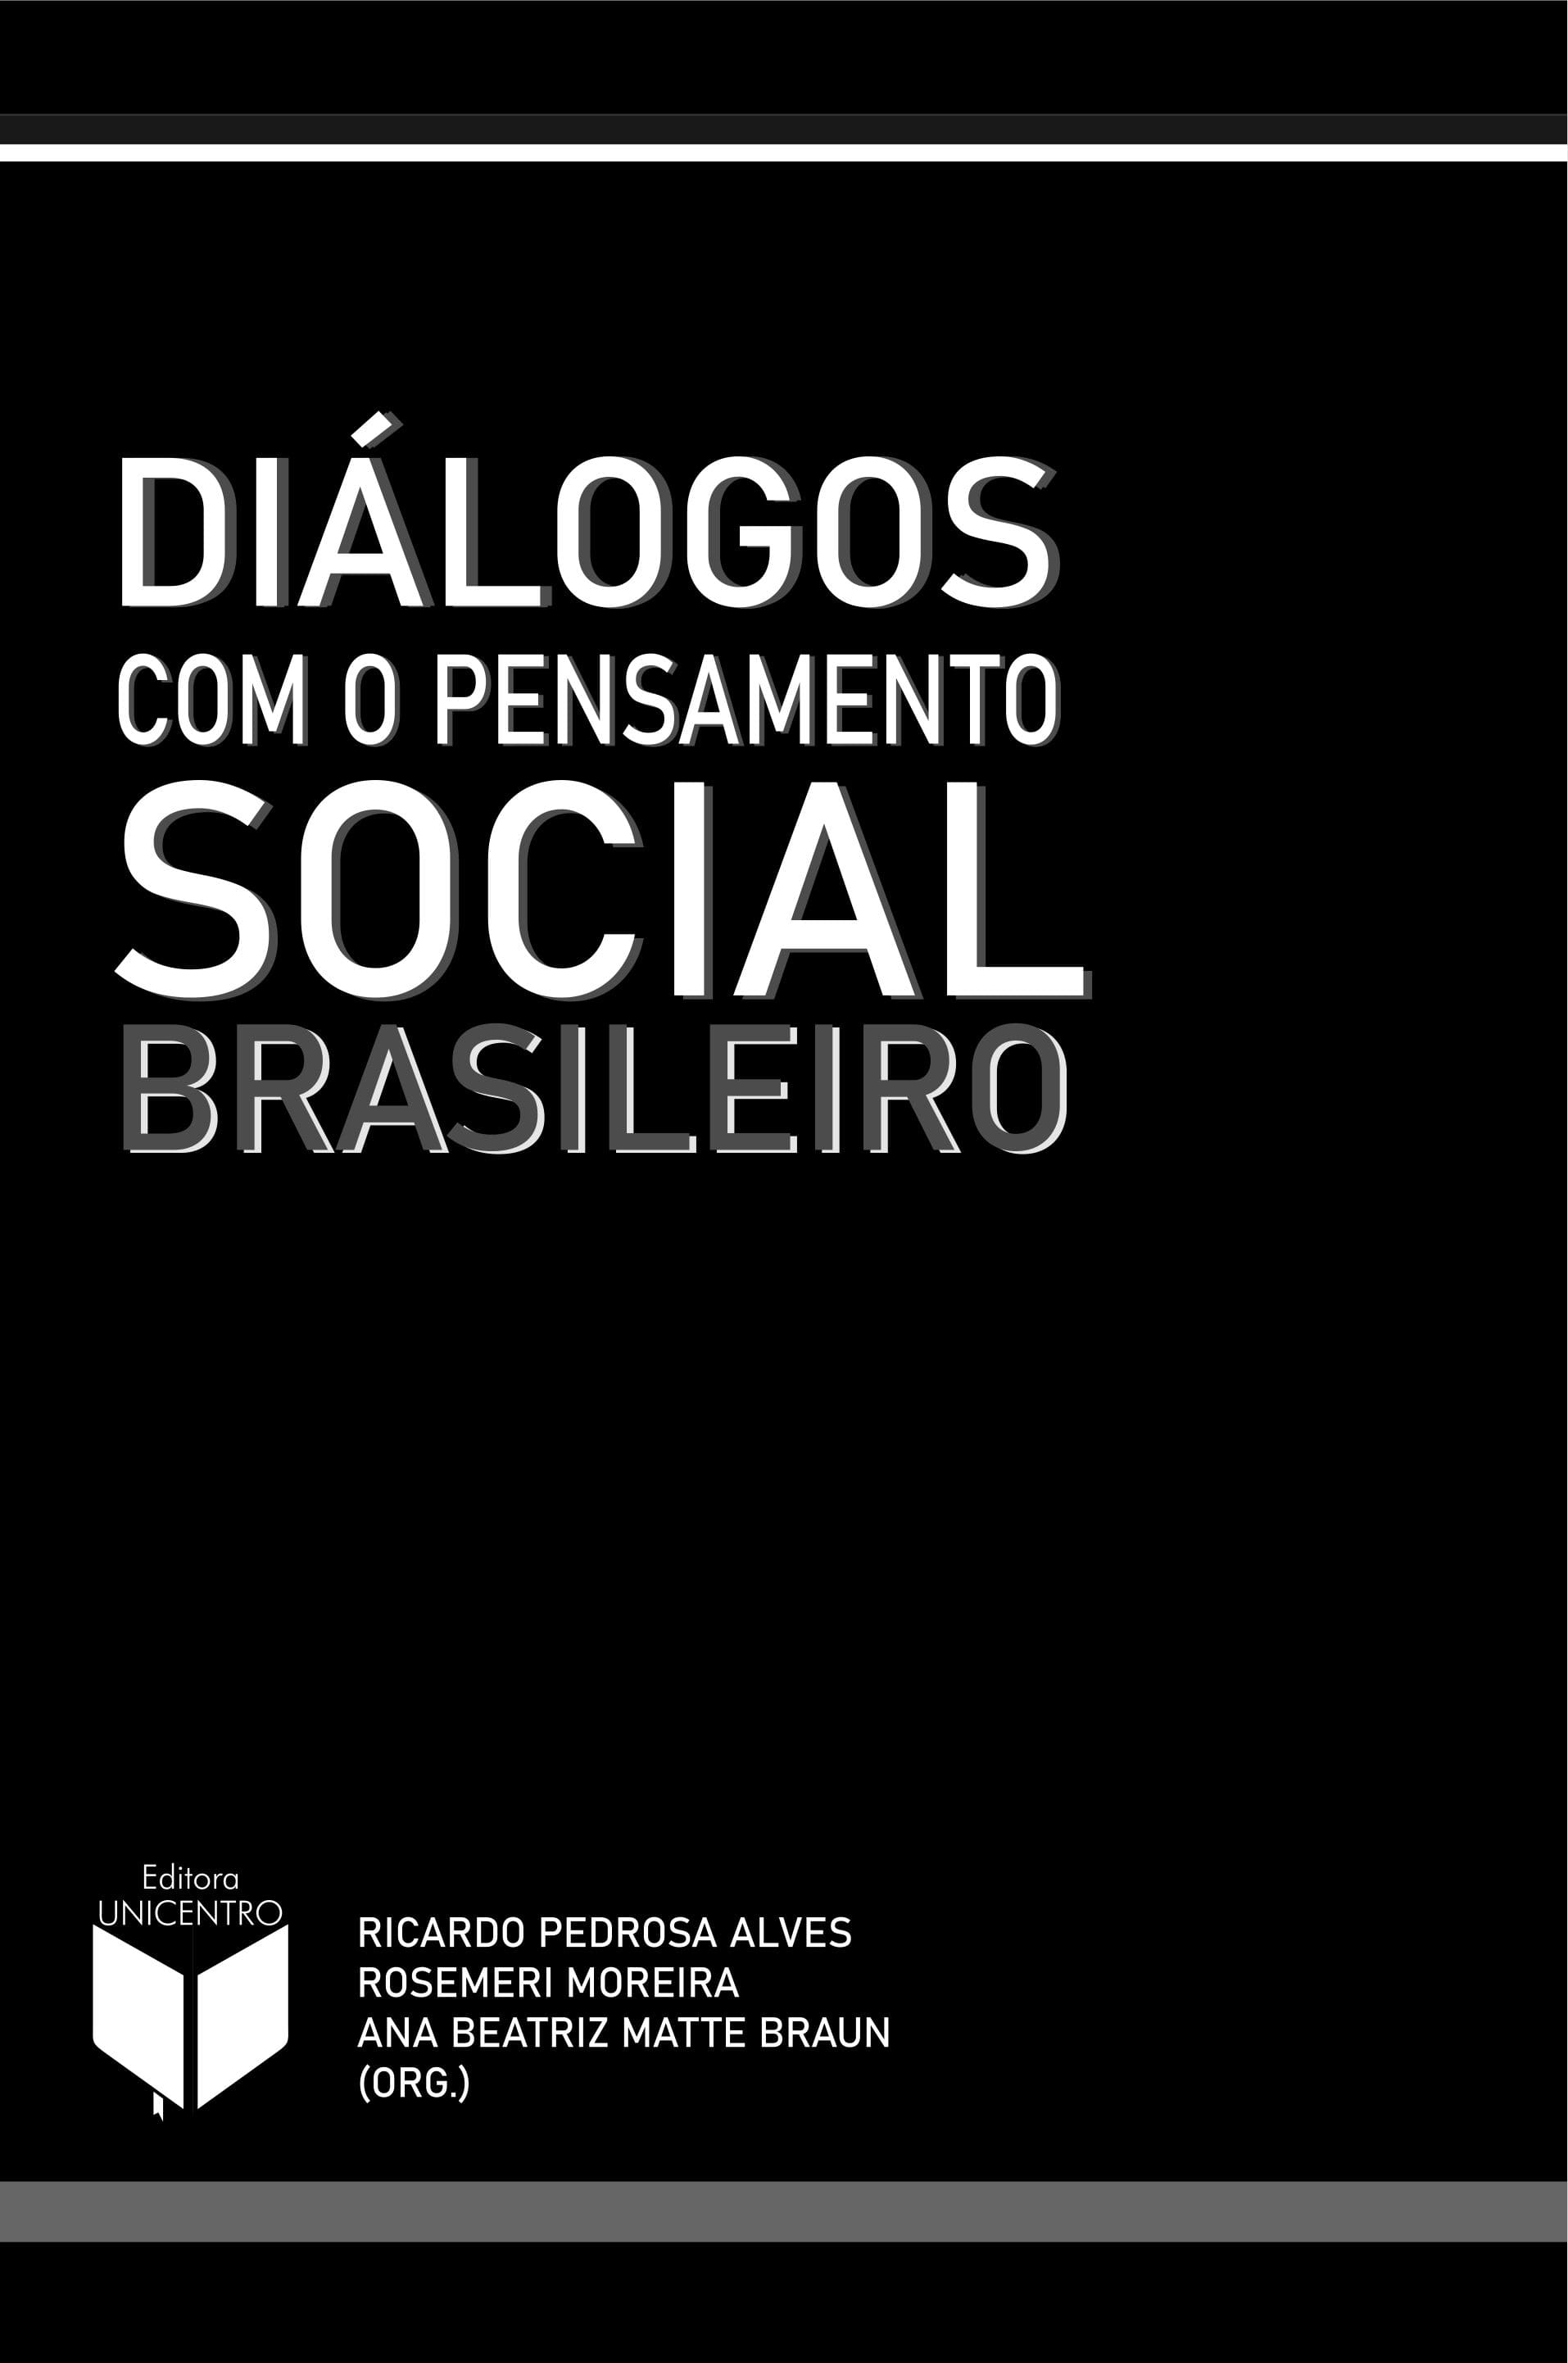 Dilogos do pensamento social brasileiro